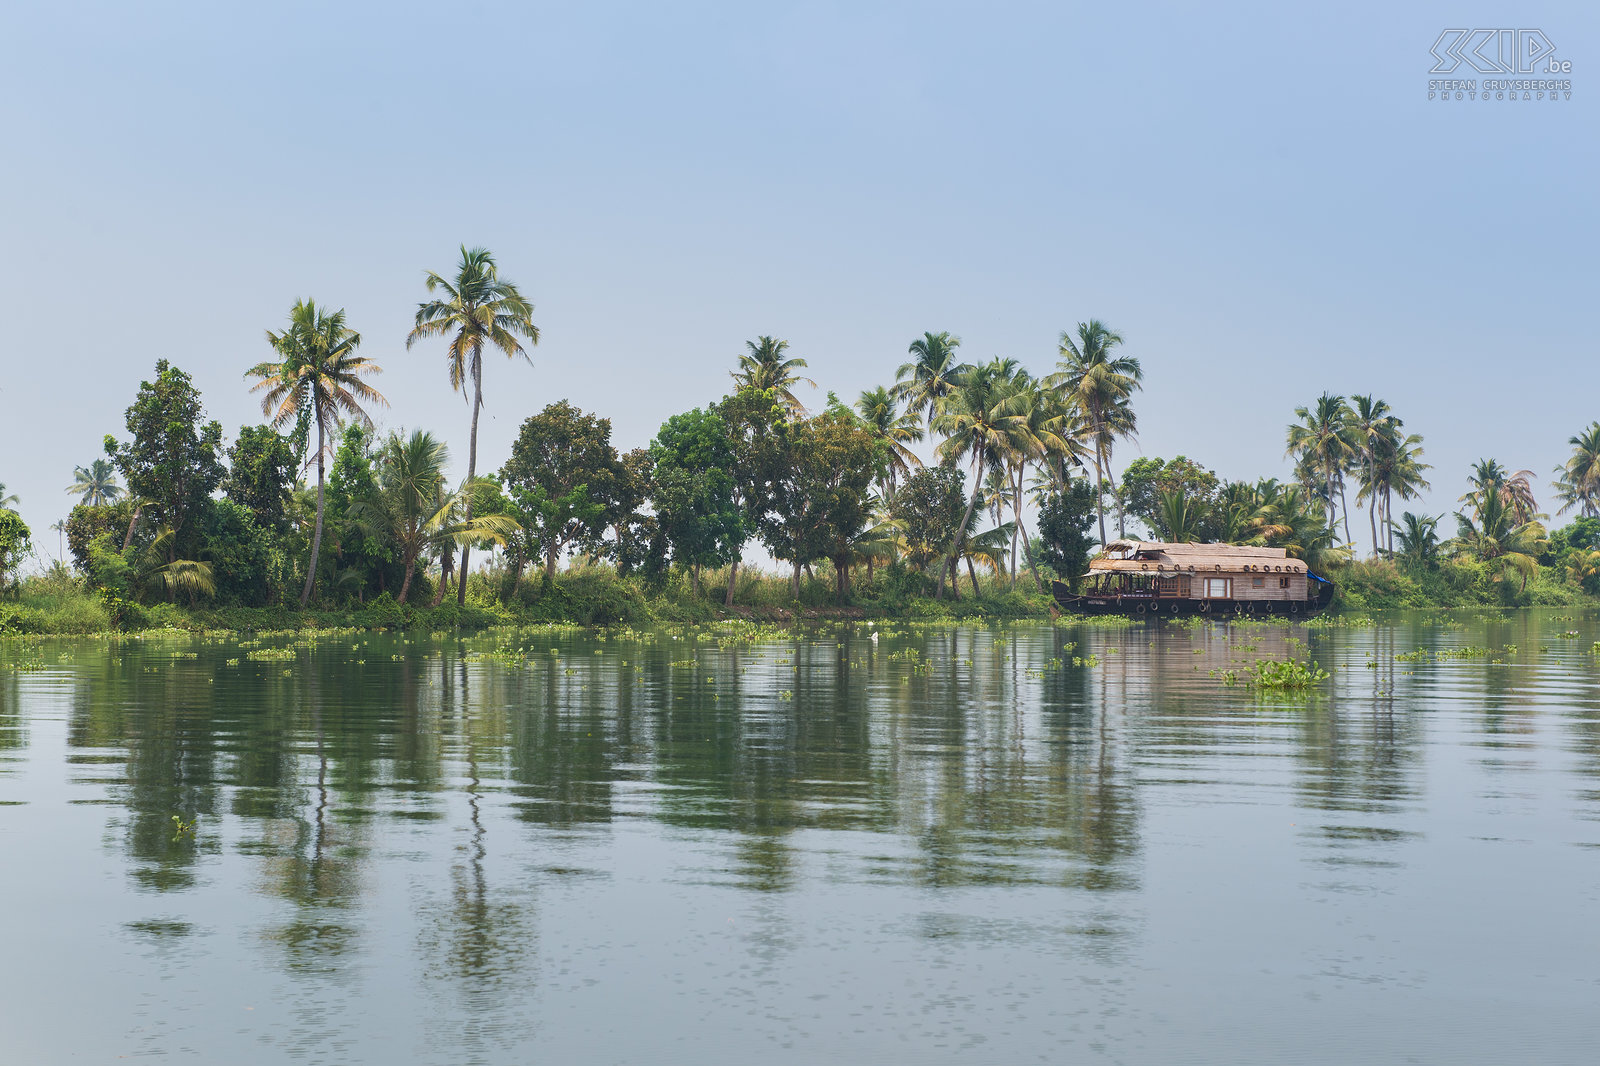 Backwaters Kerala - Houseboat Daarna vertrokken met een woonboot op de Kerala backwaters. De Kerala backwaters zijn een keten van brakke lagunes, meren en kanalen die parallel liggen aan de kust van Malabar. Het is een tropische locatie met vele palmbomen, rijstvelden, kleurrijke vogels, kleine dorpjes, ... De toeristische woonboten lijken op de traditionele Kettuvallams die werden gebruikt om de rijst en granen te vervoeren naar de havens. Stefan Cruysberghs